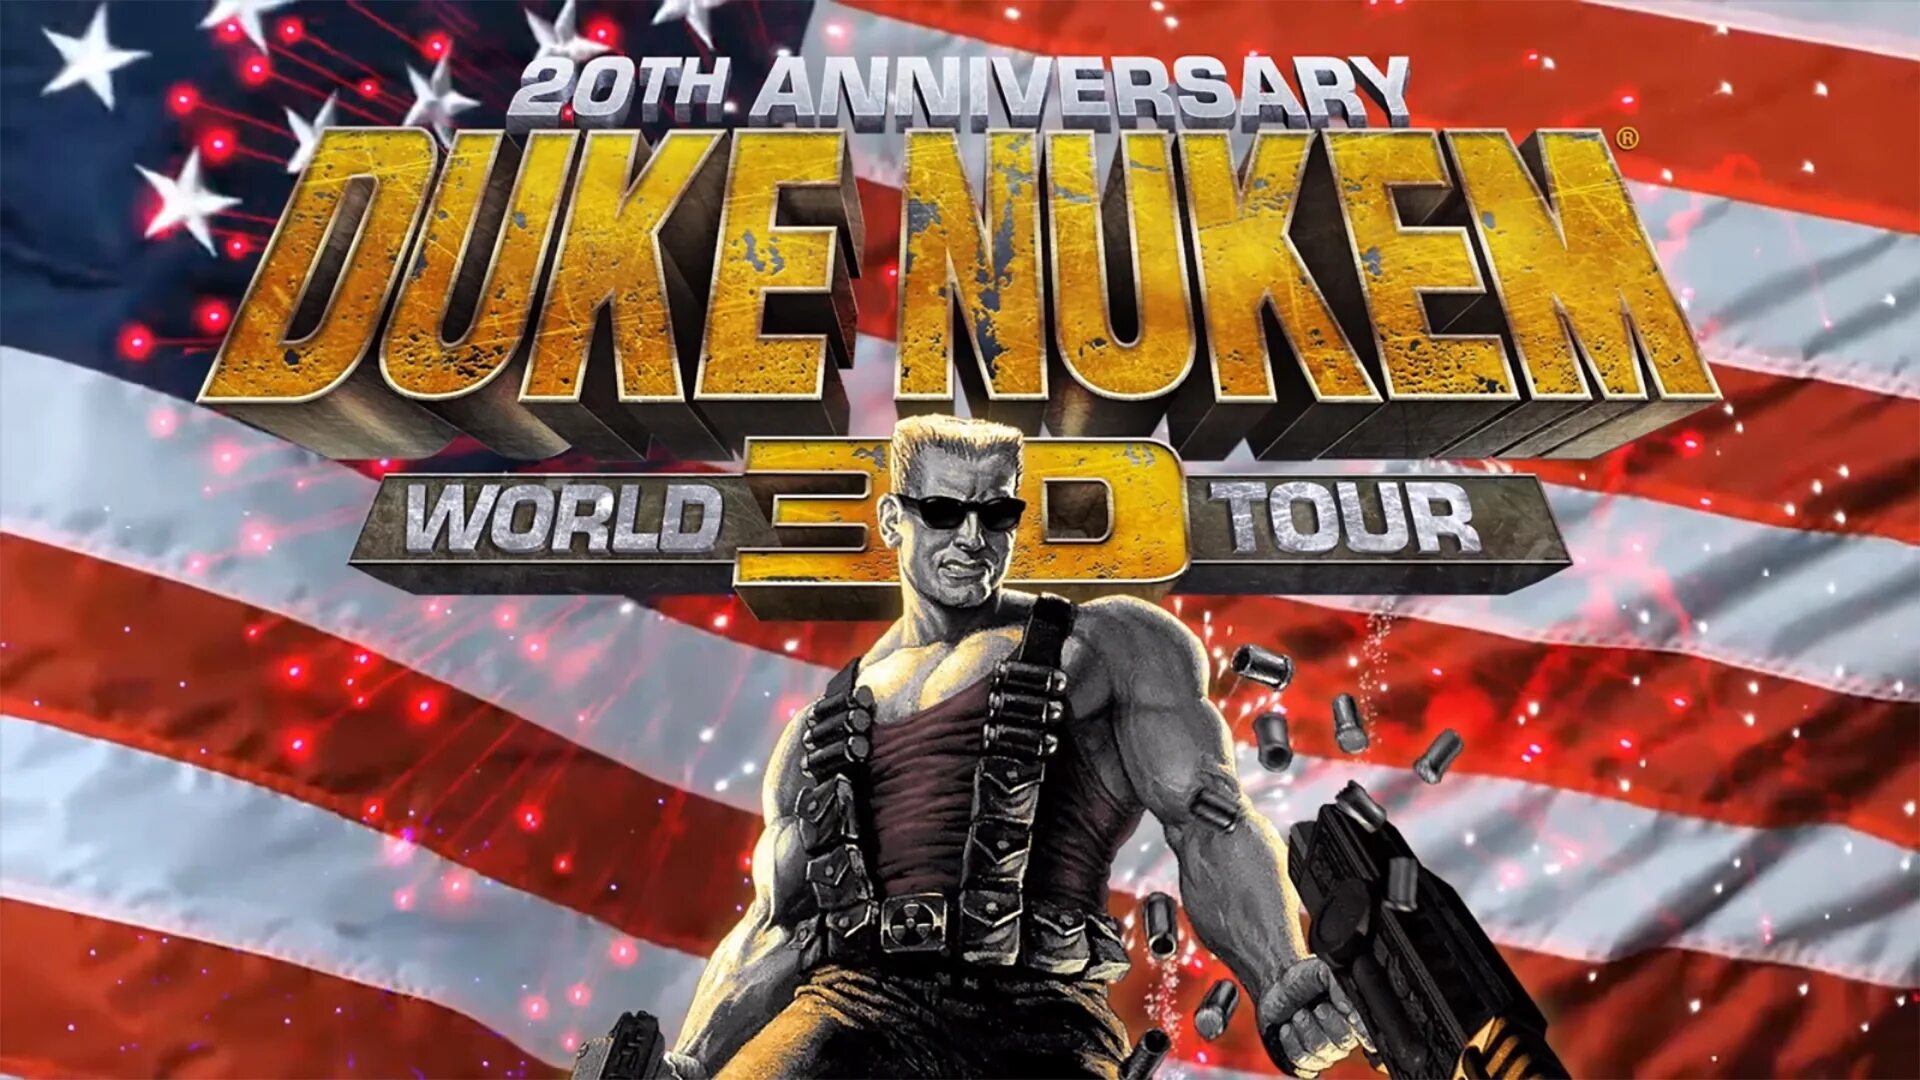 Duke Nukem ps4. Duke Nukem 3d: 20th Anniversary World Tour. Duke Nukem 3d: 20th Anniversary World Tour ps4.